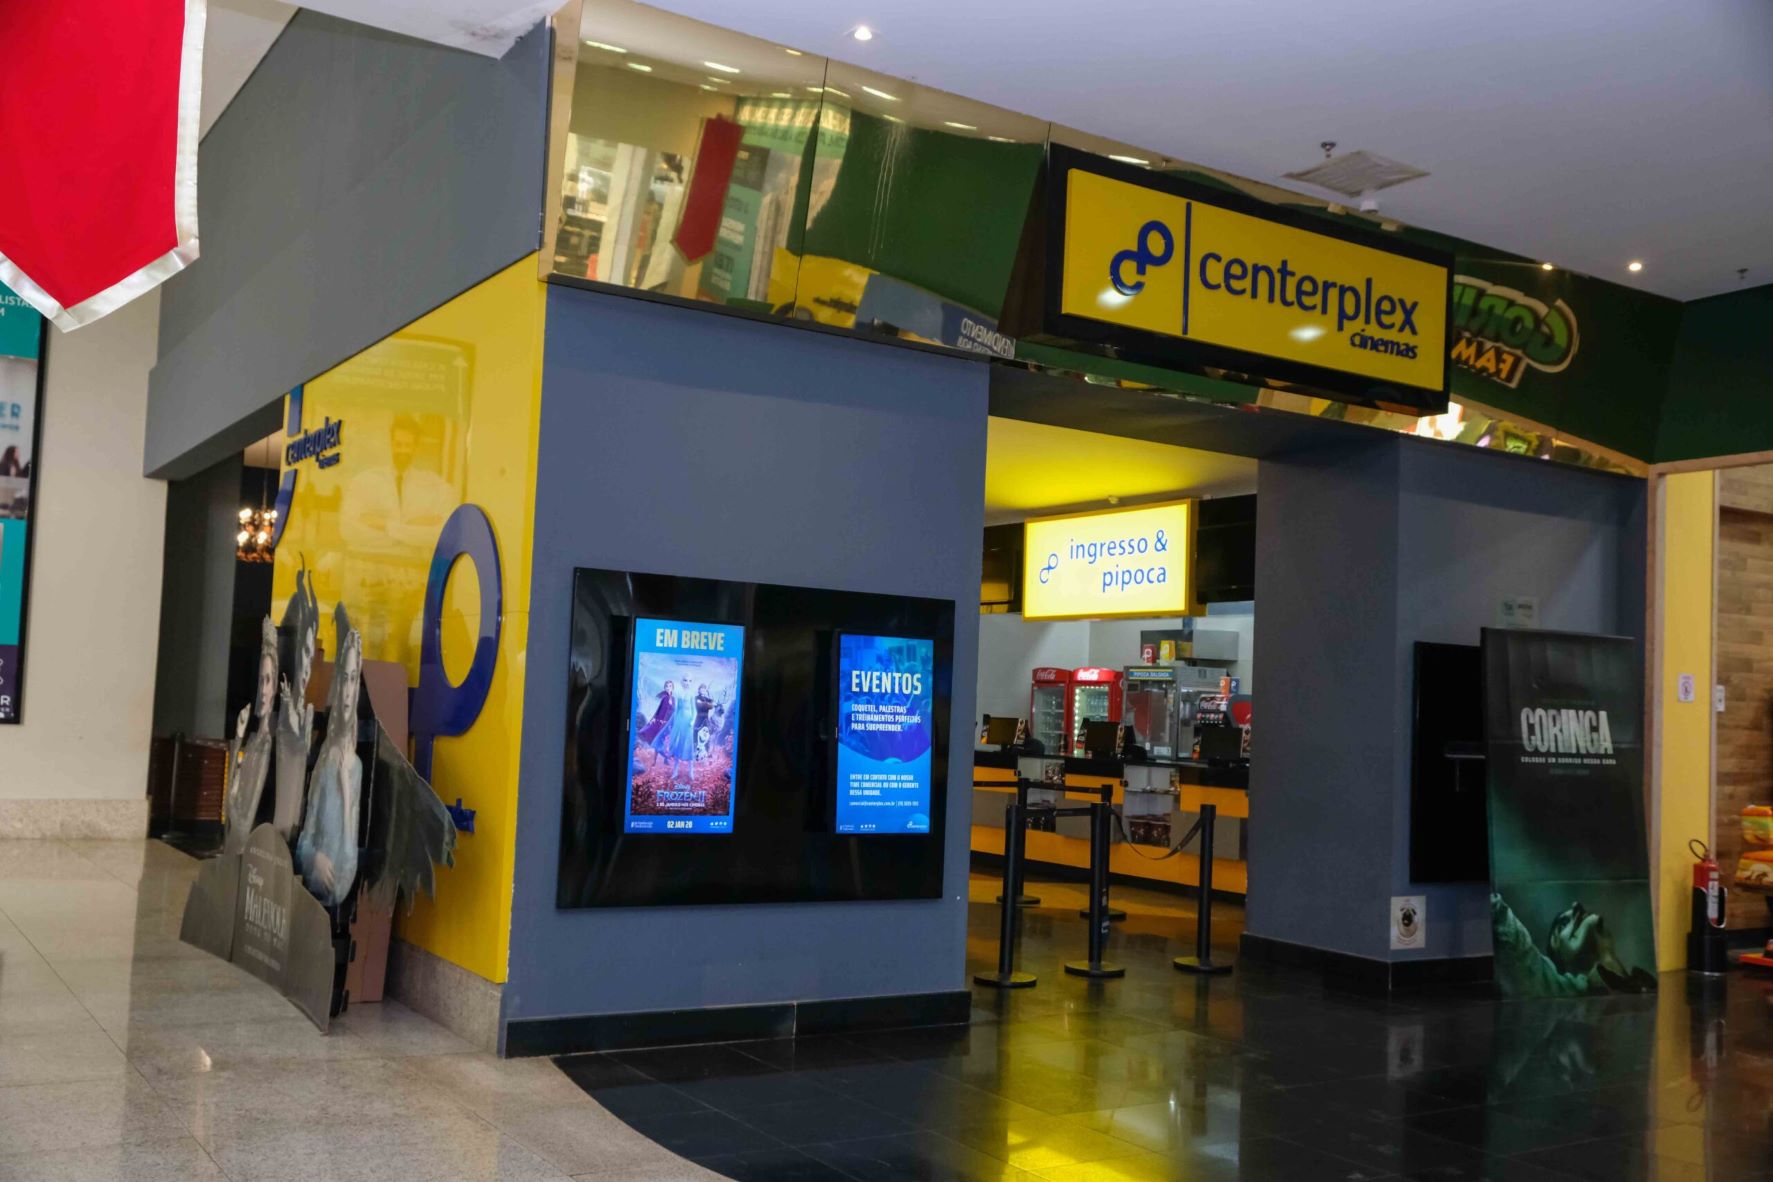 Todos pagam R$10 em nova promoção do Centerplex Cinemas North Shopping Barretos